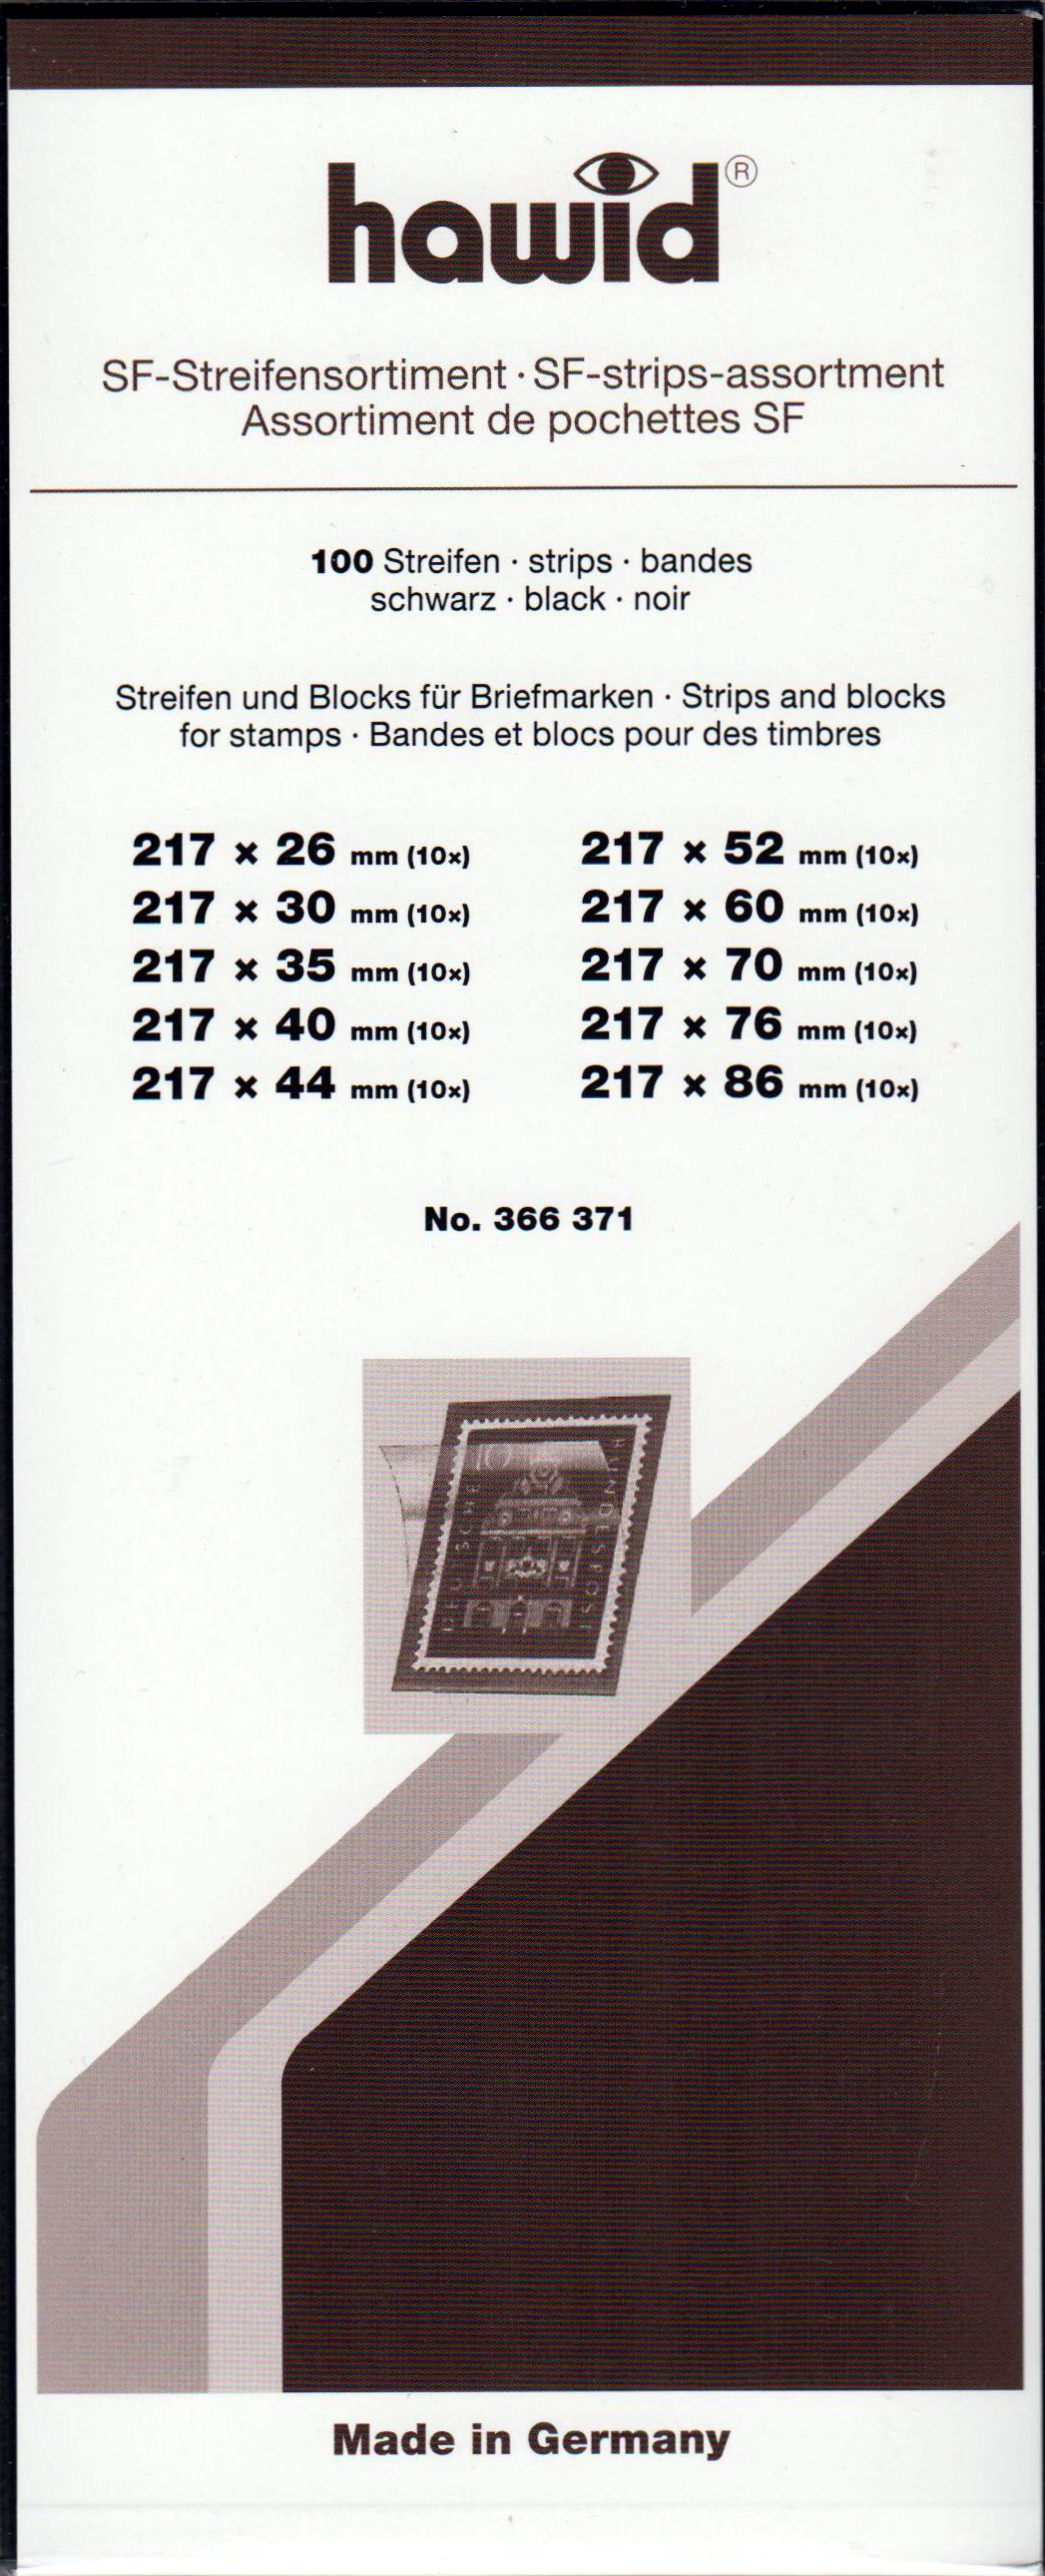 SF-Streifensortiment, 100 Streifen schwarz, Art-Nr. 366371